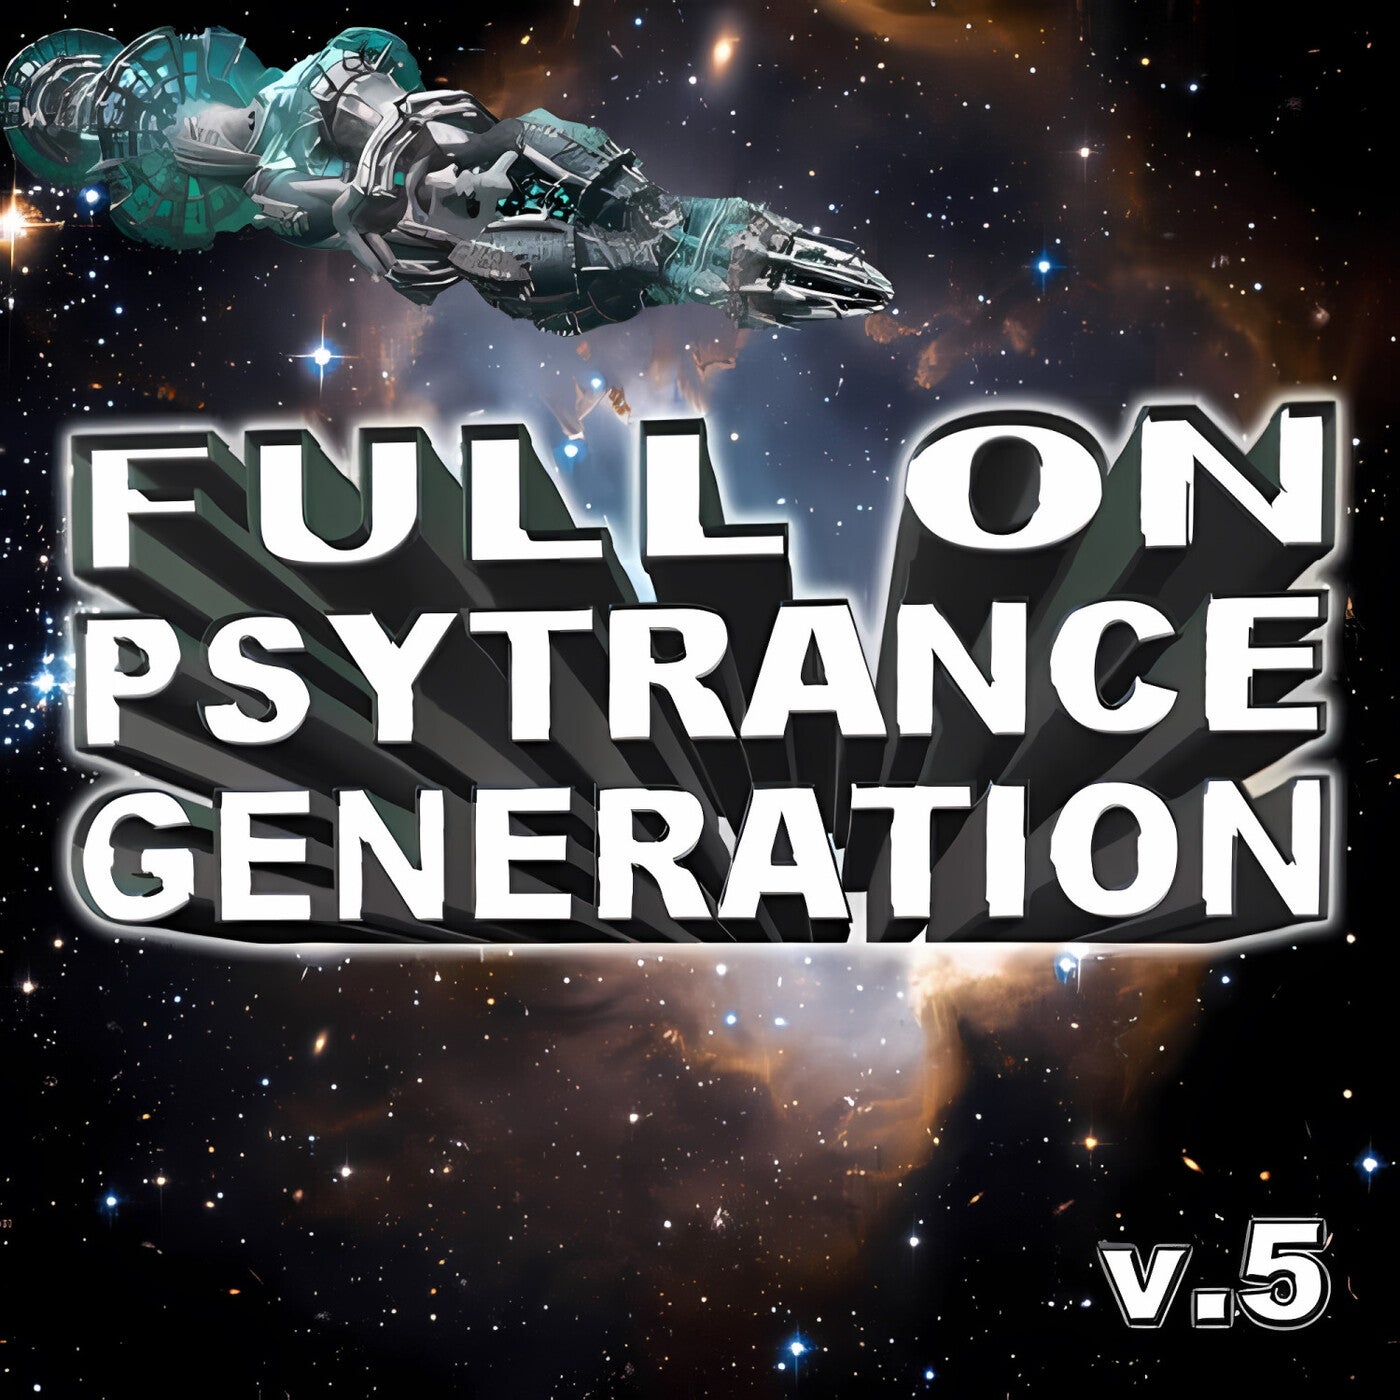 Full On Psytrance Generation, Vol. 5